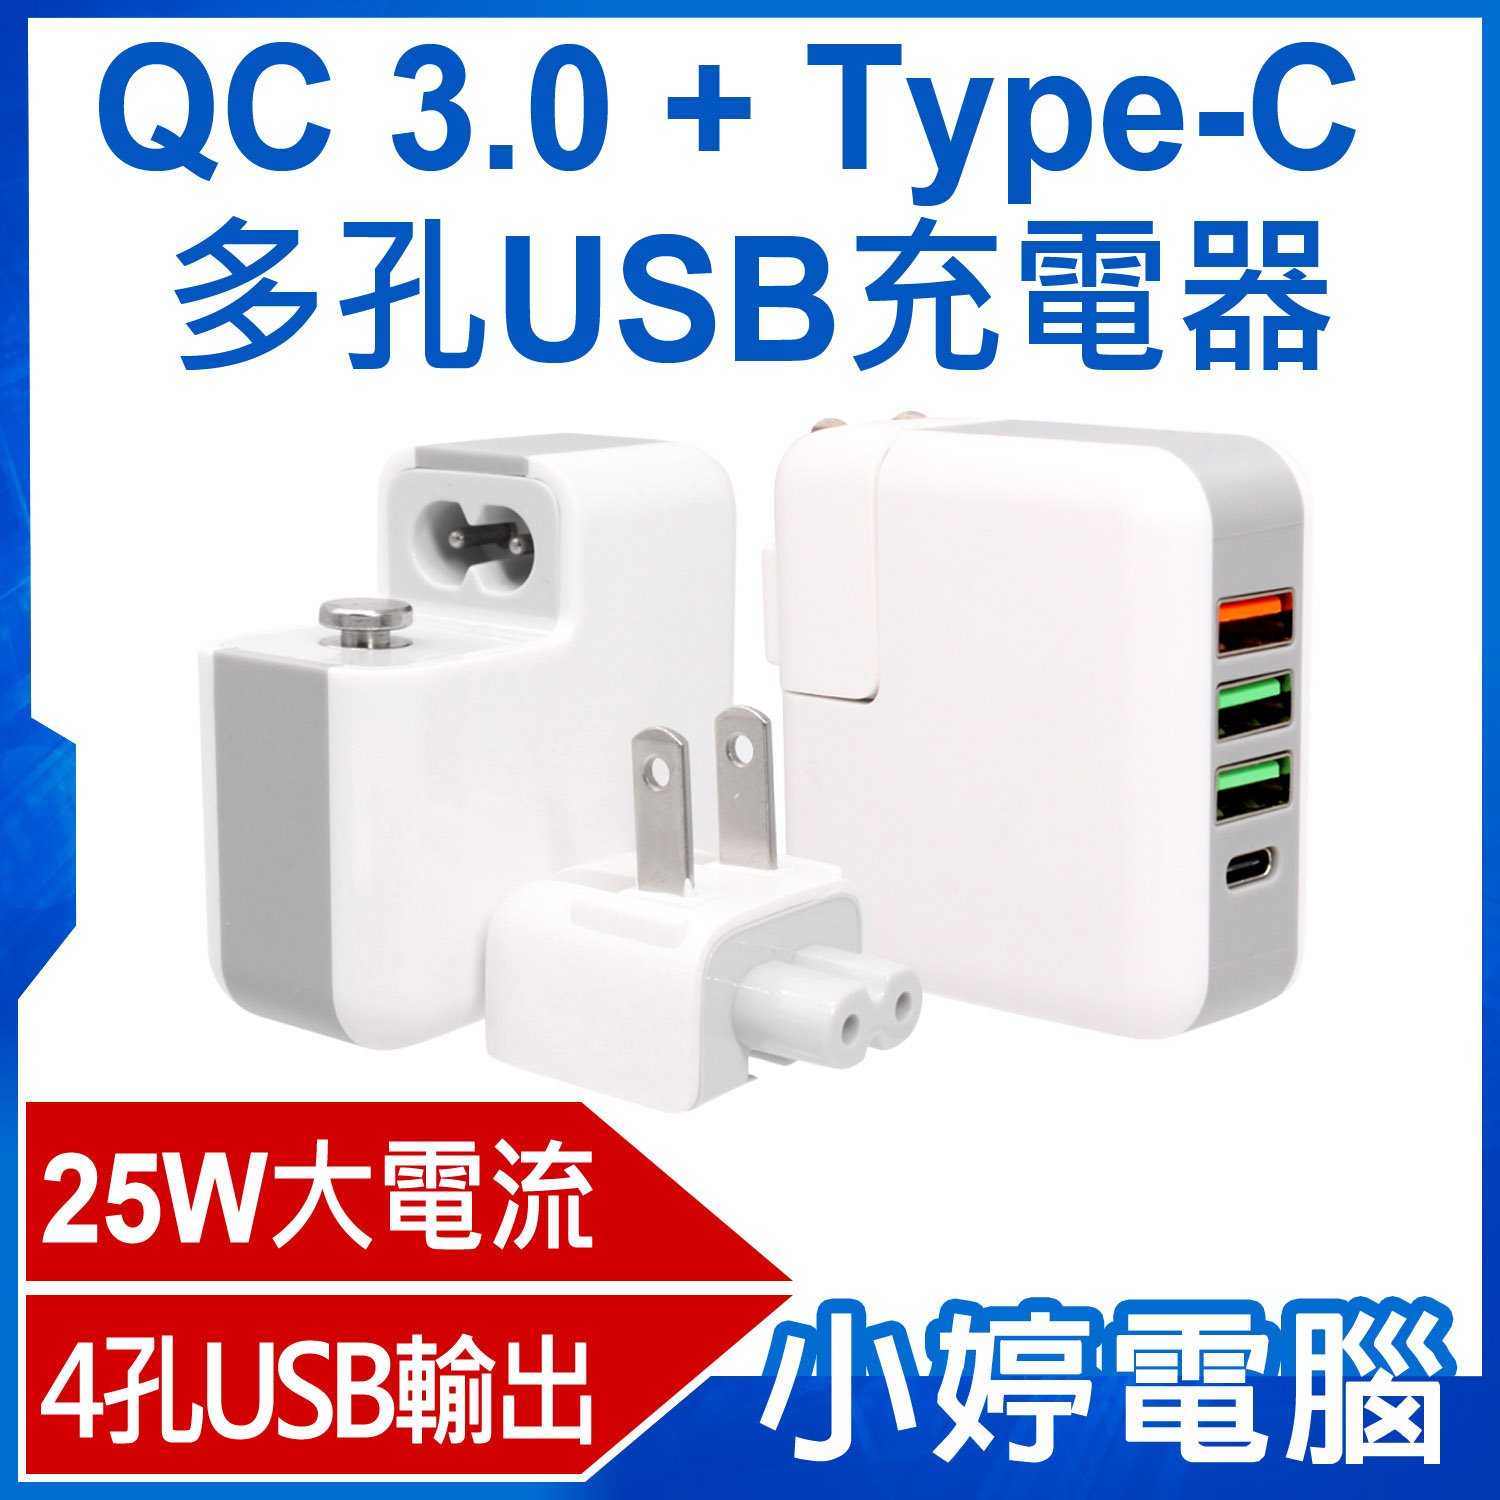 【小婷電腦】QC 3.0+Type-C多孔USB充電器 25W電流輸出 4孔充電 旅充